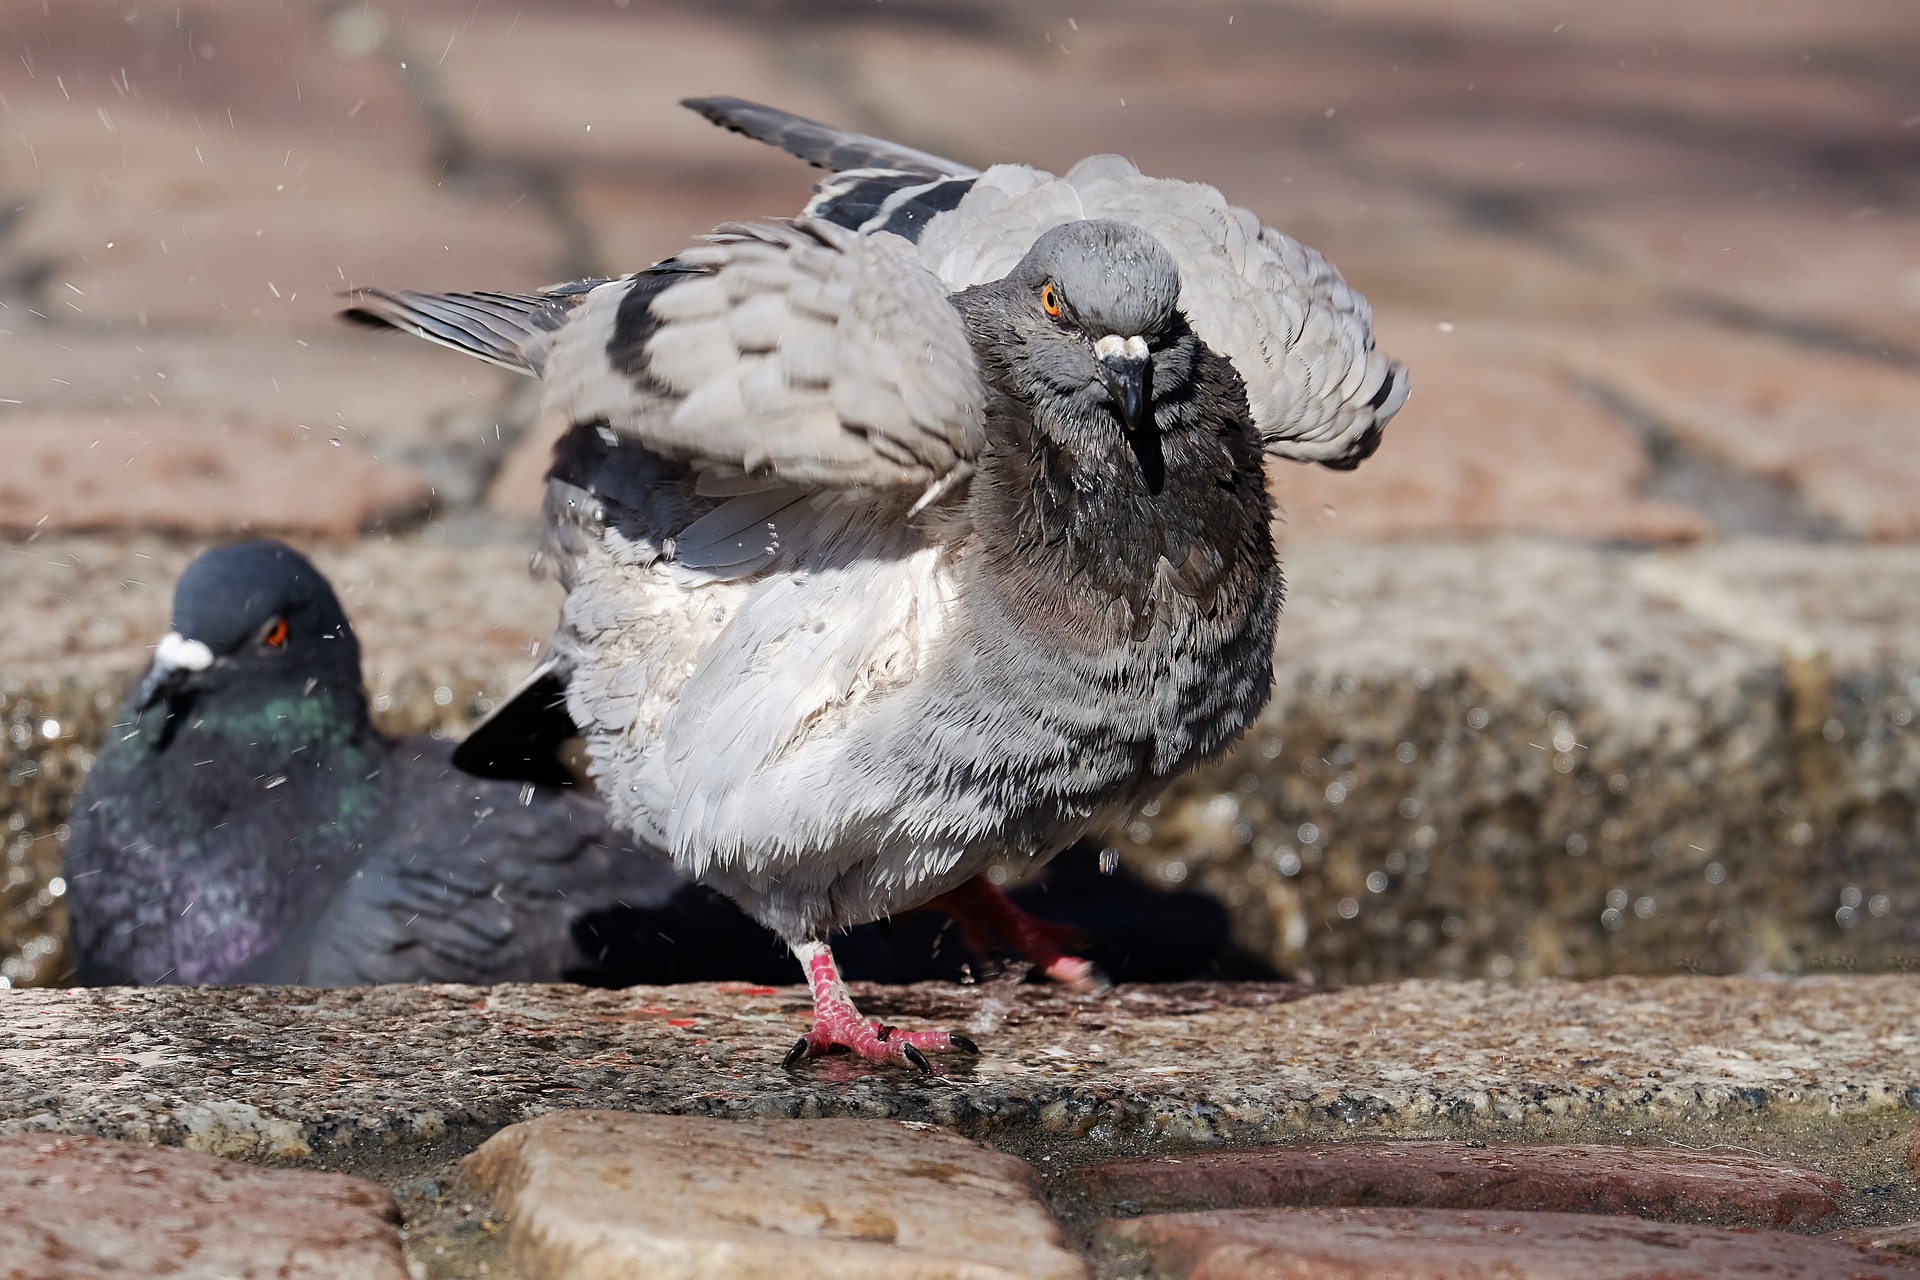 ハトが原因になりうる病気について 鳥害対策 鳩対策 カラス対策 のリーディングカンパニー フジナガの公式ブログ